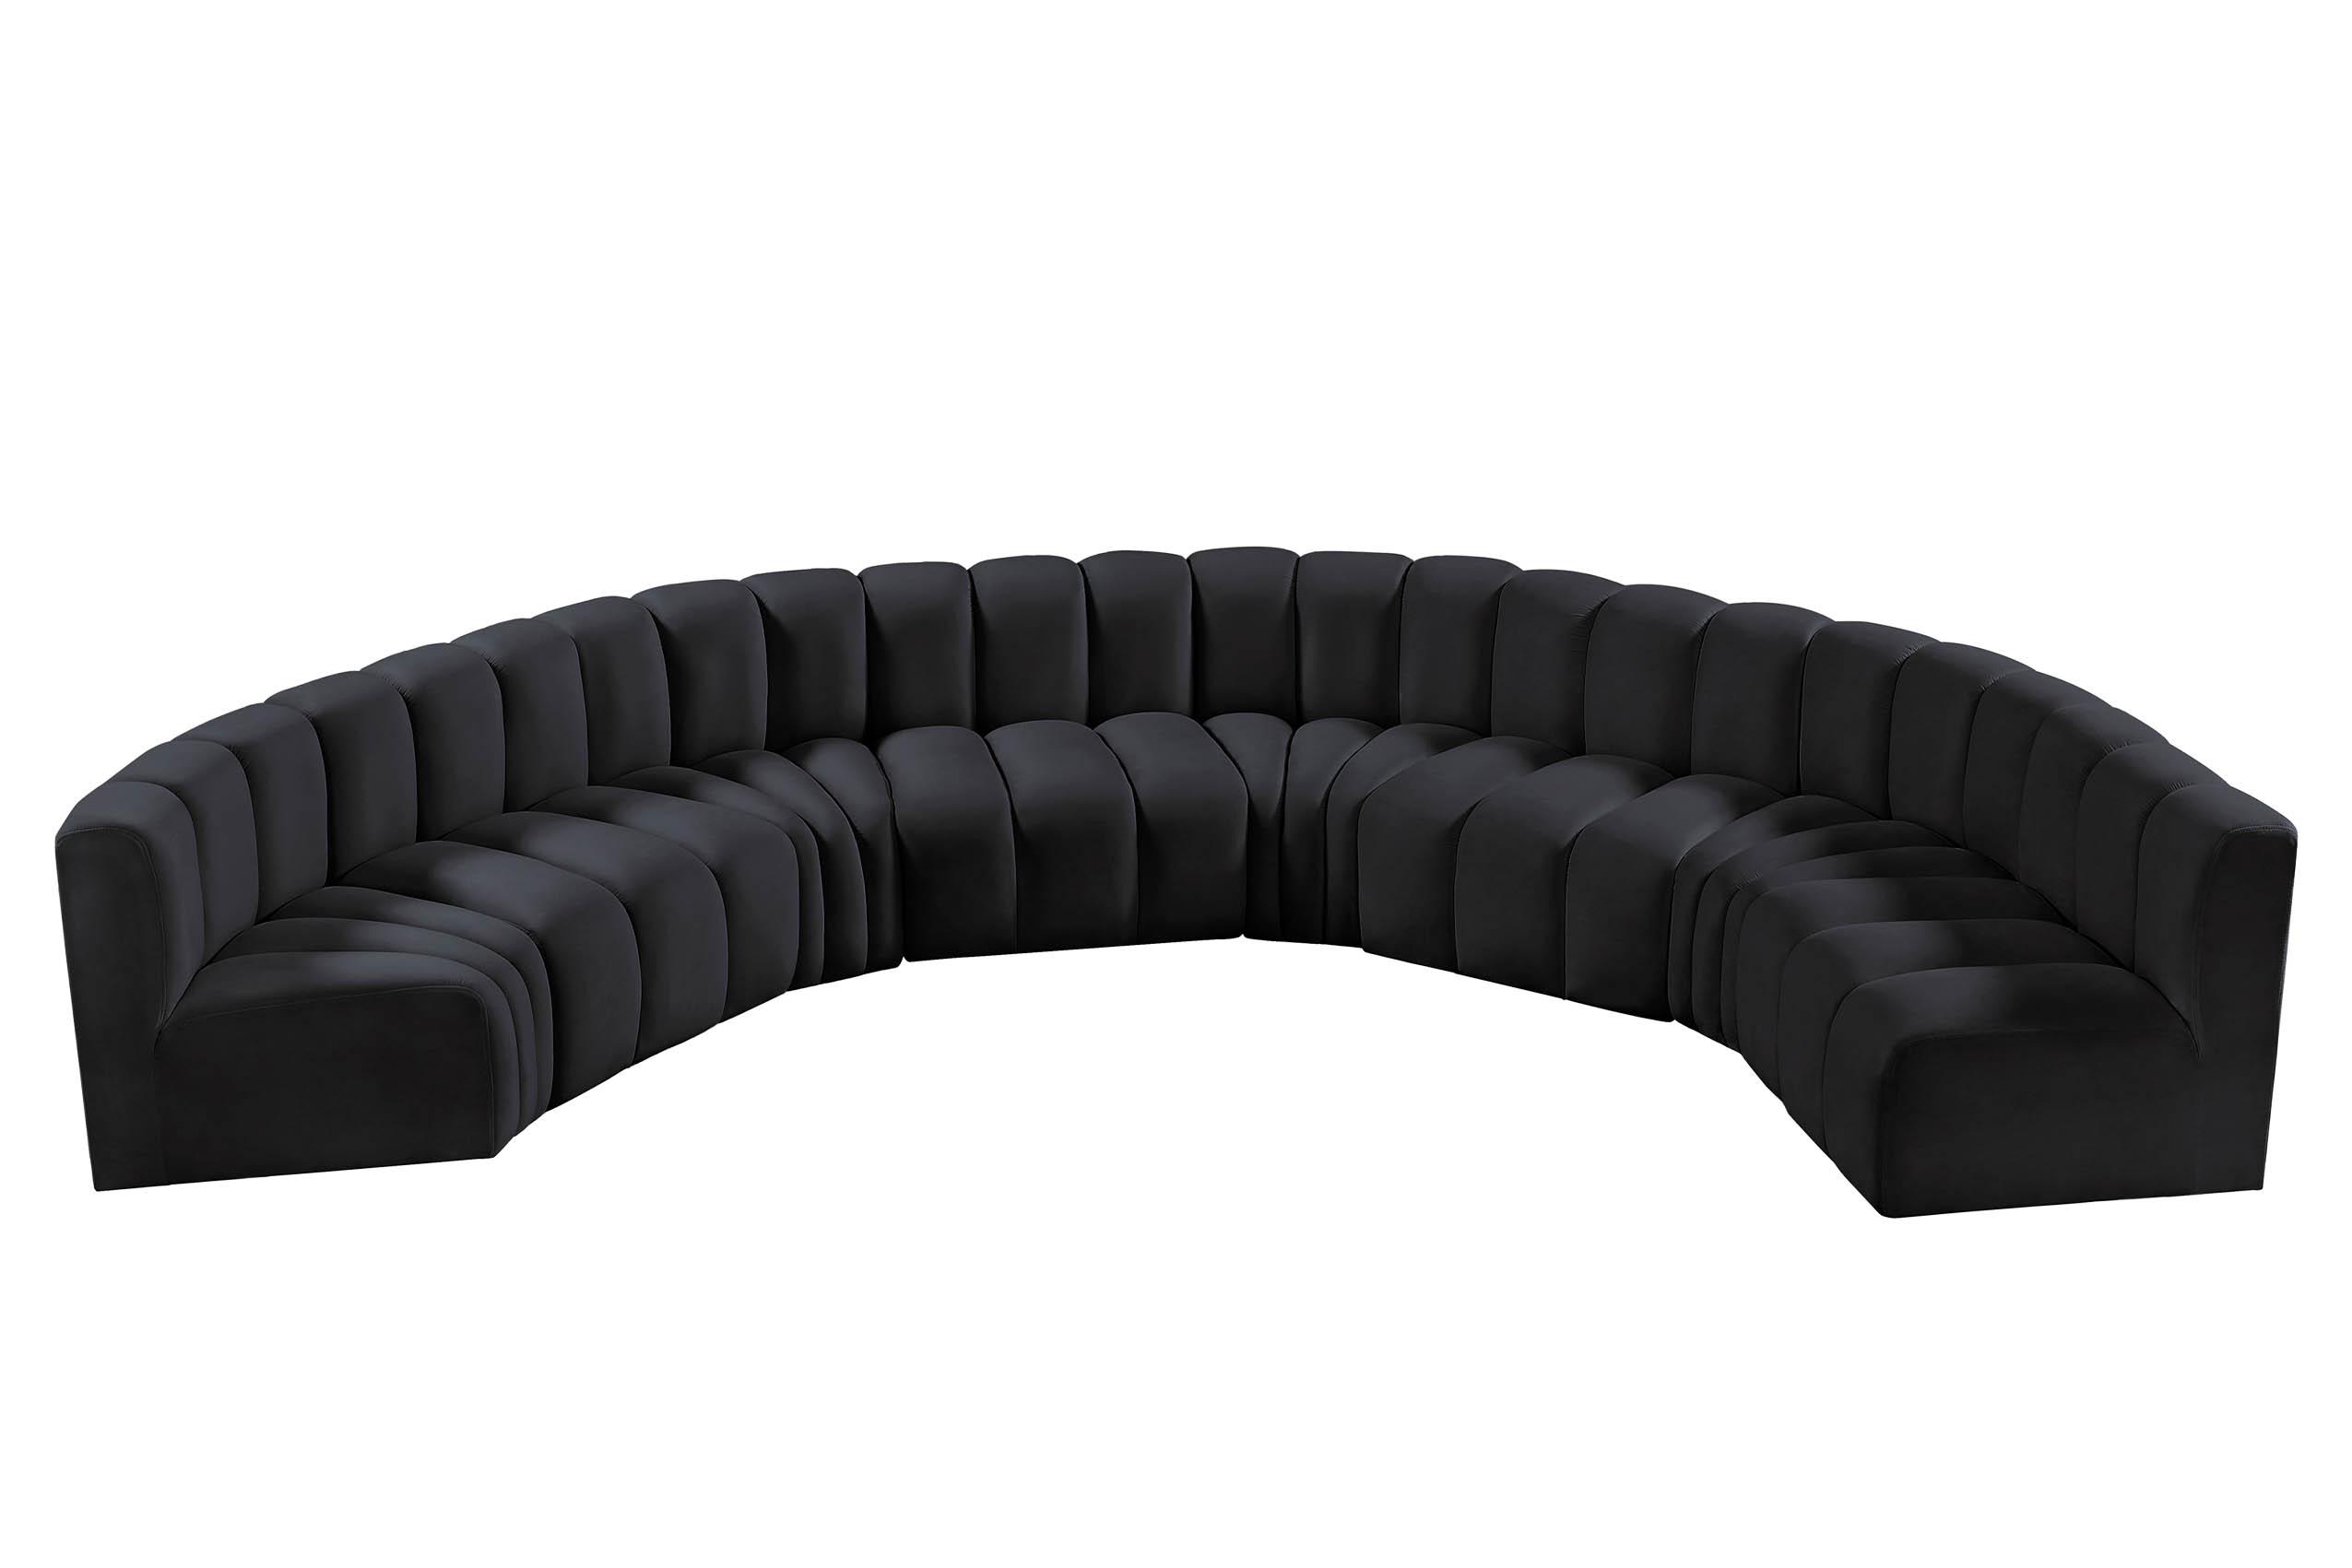 Contemporary, Modern Modular Sectional Sofa ARC 103Black-S8B 103Black-S8B in Black Velvet